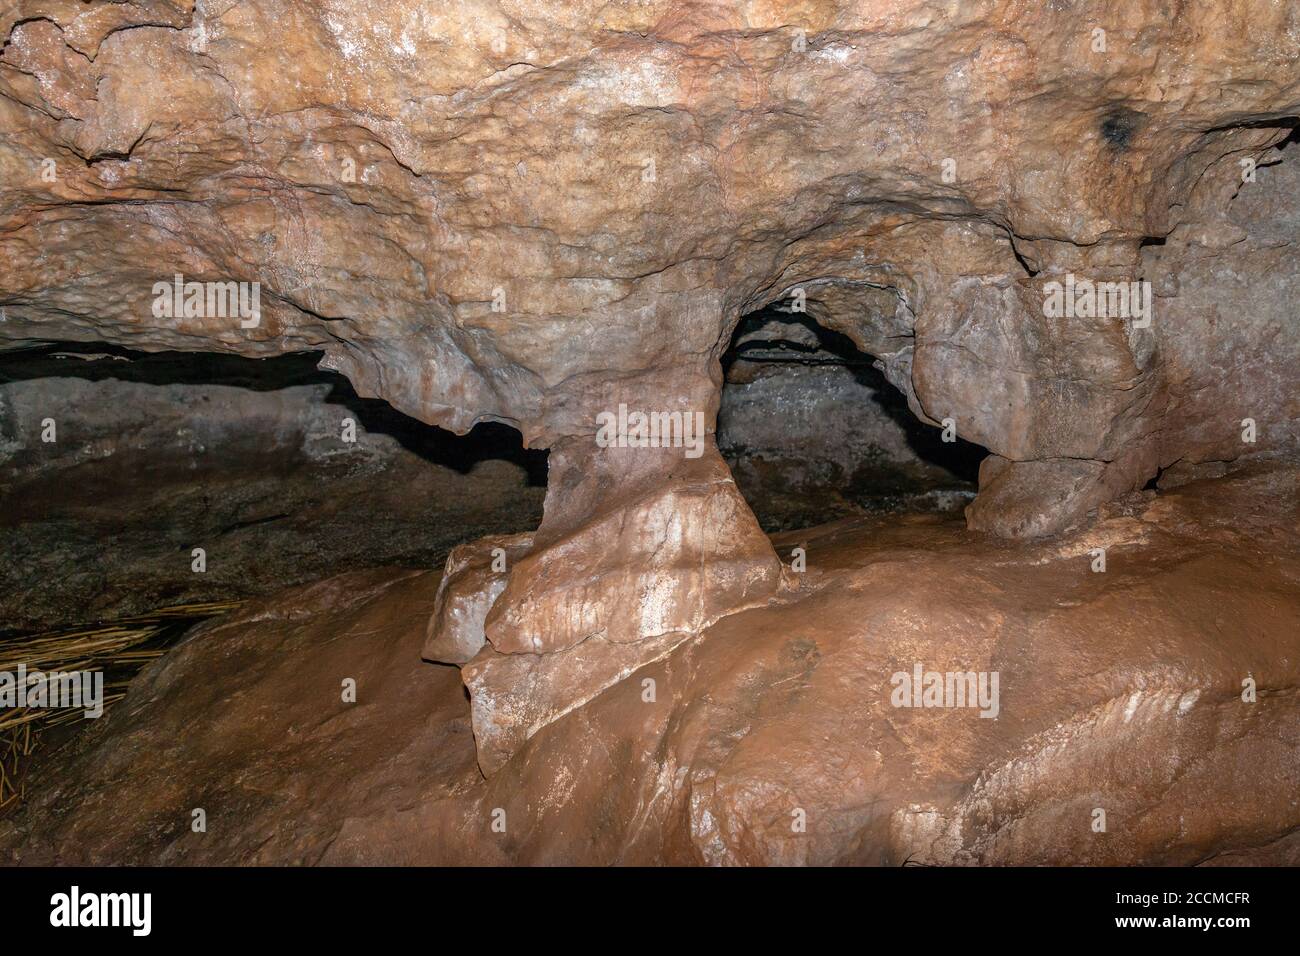 L'interno di una grotta calcarea. La roccia è coperta di fango. Buchi conducono al bart posteriore della caverna. Foto Stock